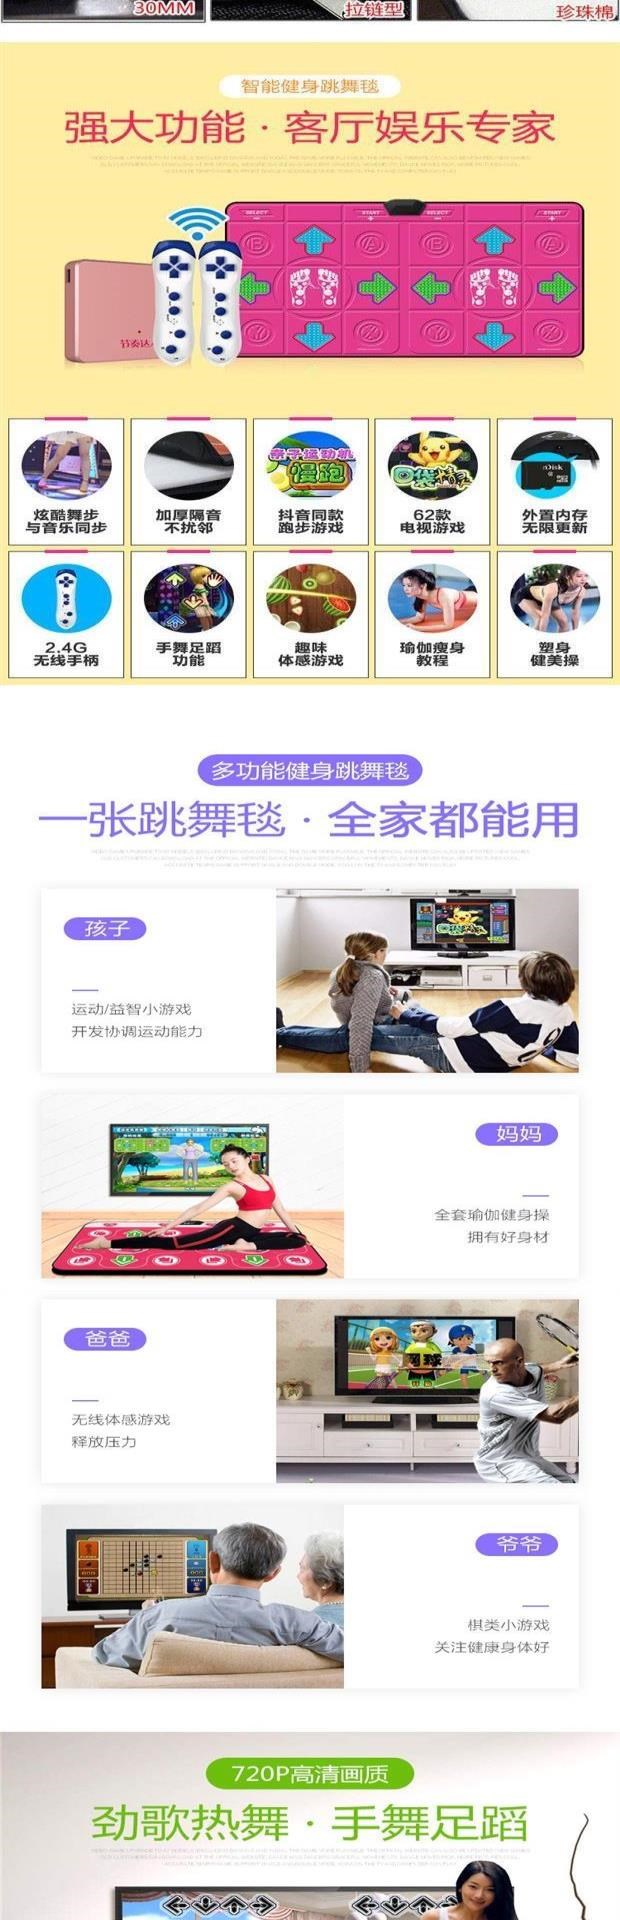 Chiếu khiêu vũ gia đình không dây với máy trò chơi chạy chiếu kết nối TV dành cho trẻ em học khiêu vũ. - Dance pad